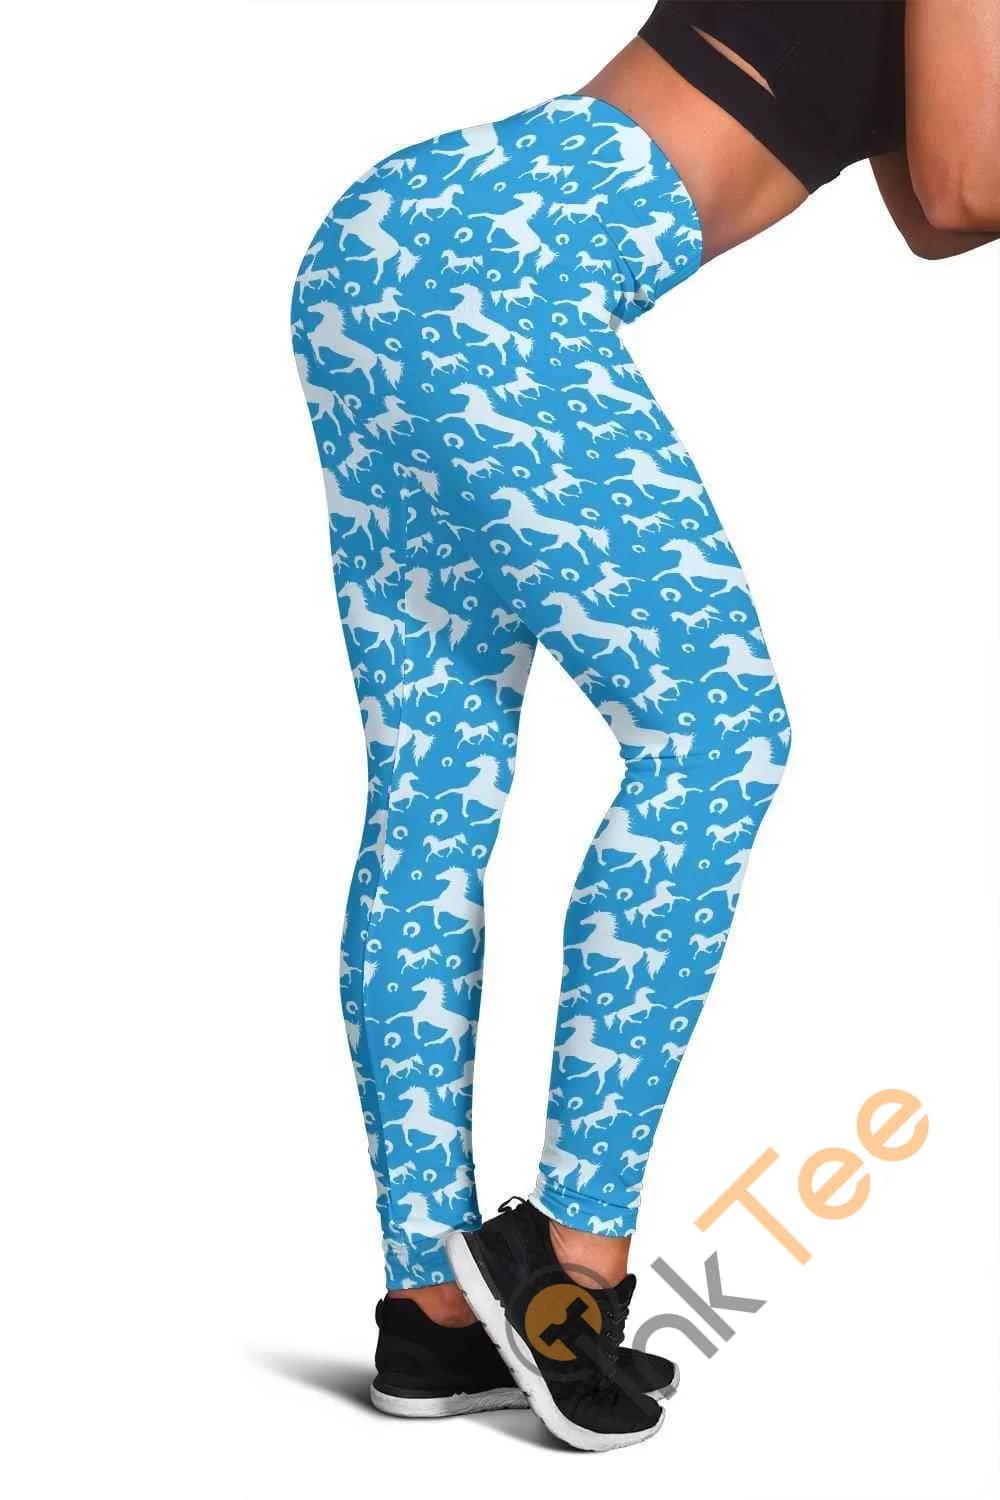 Blue Horse 3D All Over Print For Yoga Fitness Women's Leggings